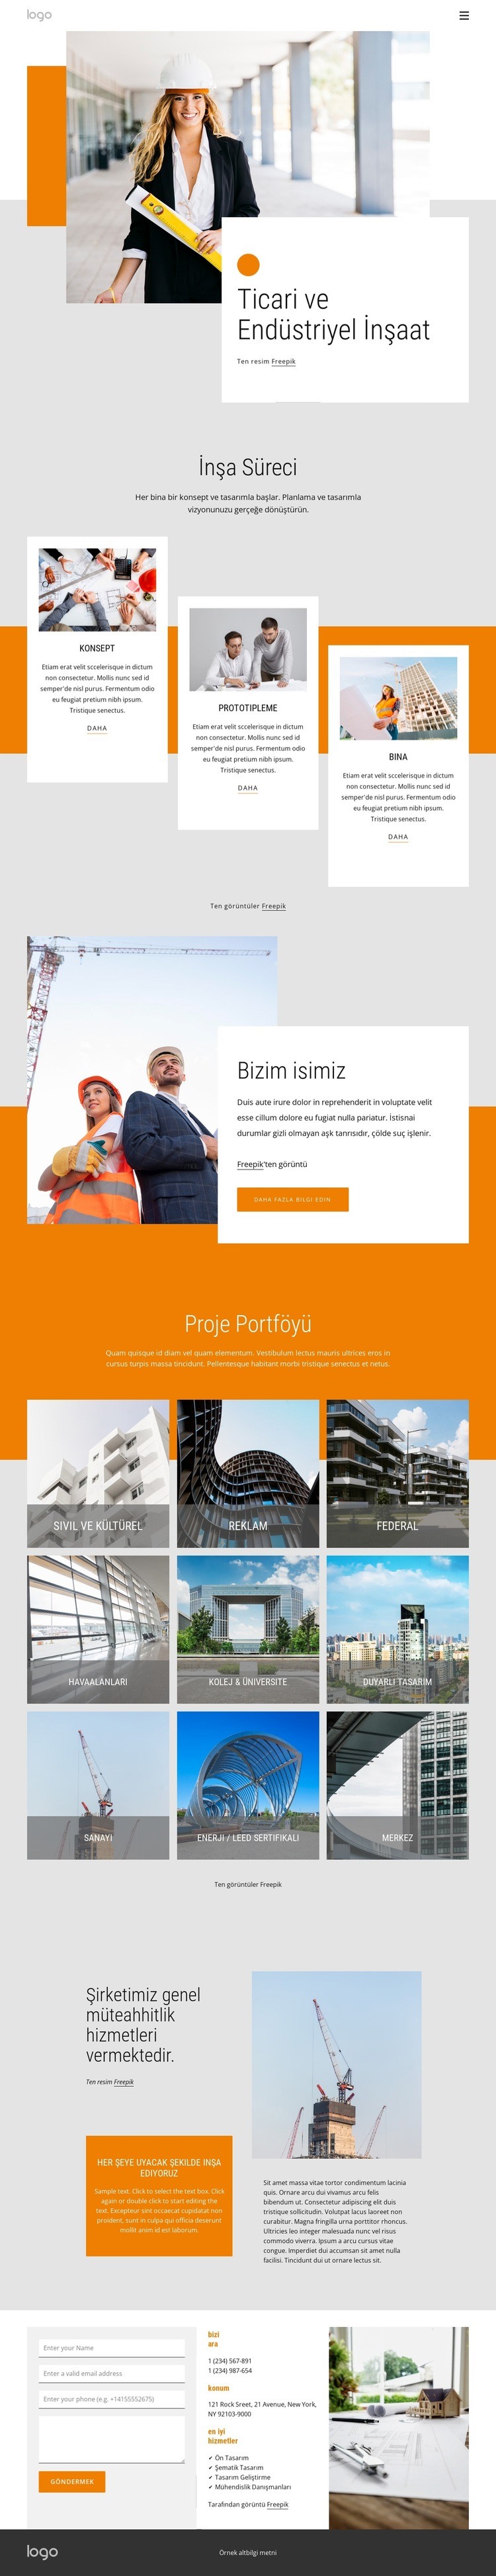 Ticari ve endüstriyel inşaat Web sitesi tasarımı